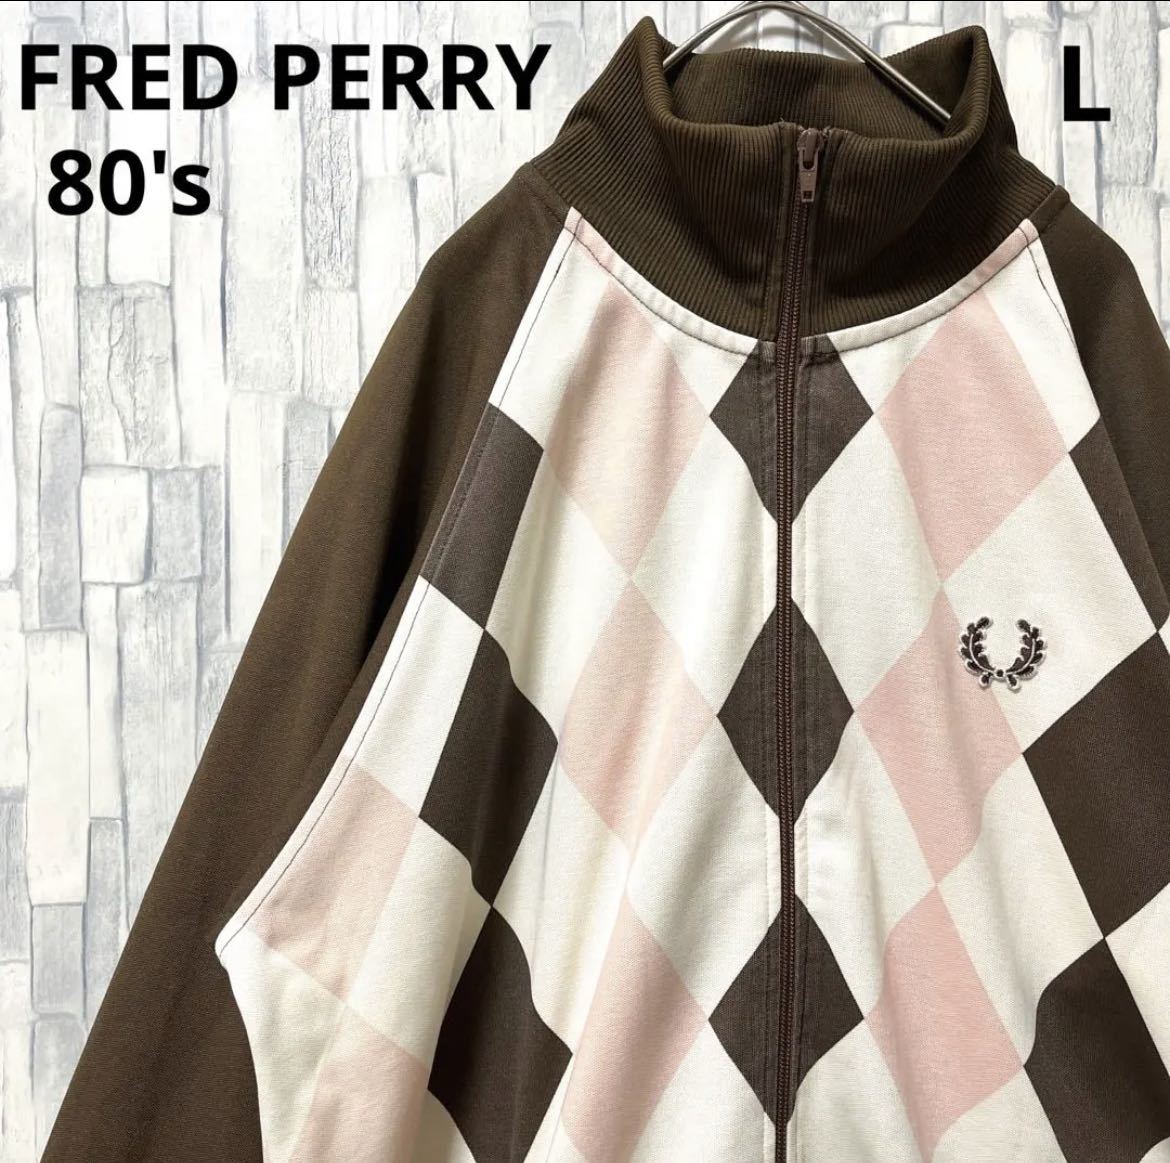 何でも揃う ジャージ フレッドペリー PERRY FRED 上 80年代 80s